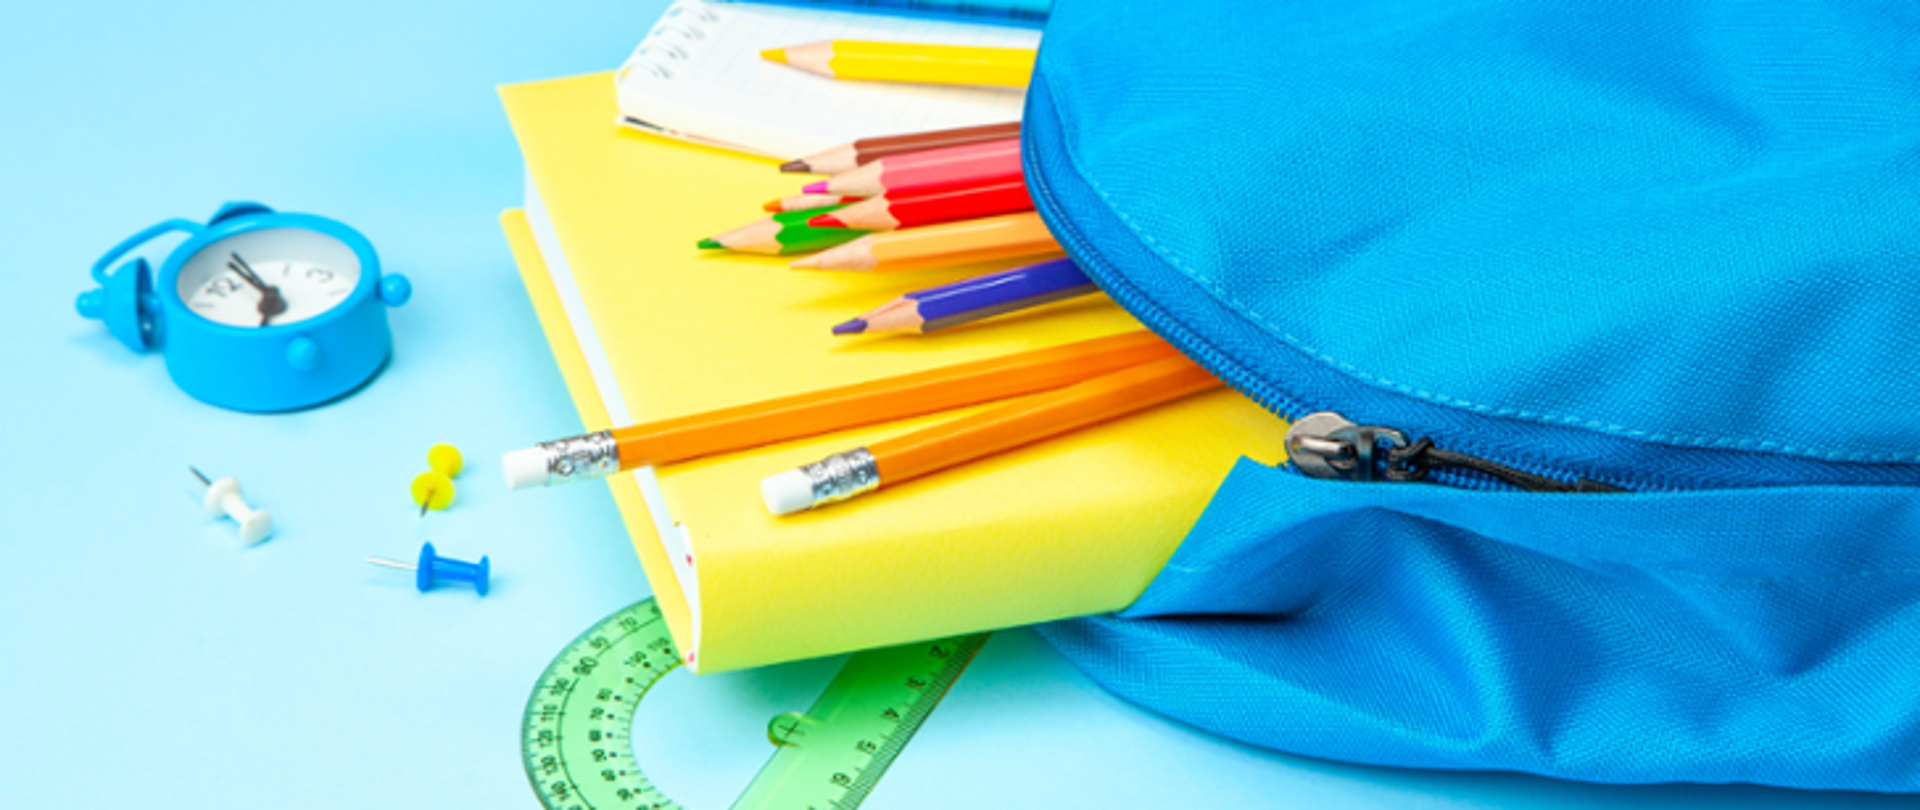 Na zdjęciu rozsunięty niebieski plecak, na jasnoniebieskim tle rozsypane przybory szkolne (kredki, ołówki, kątomierz), z plecaka wysuwa się żółty podręcznik i notes.